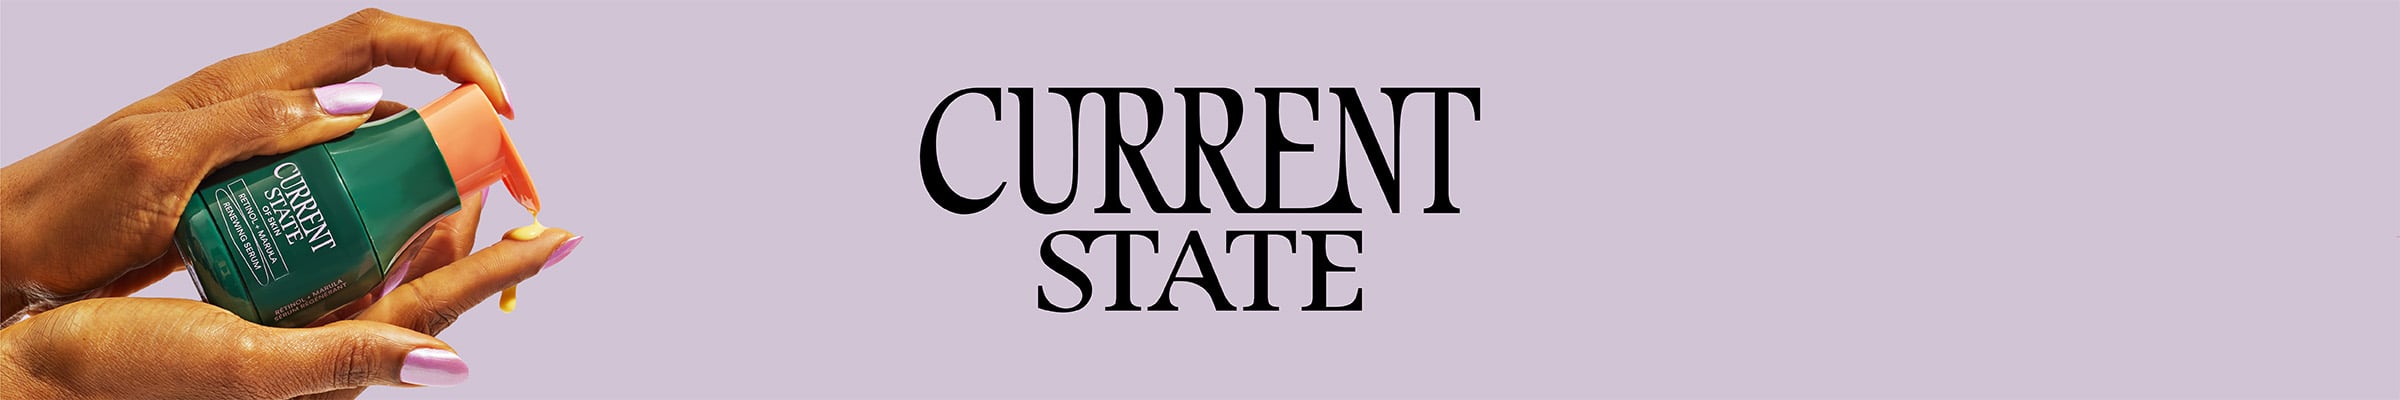 currentstate-banner